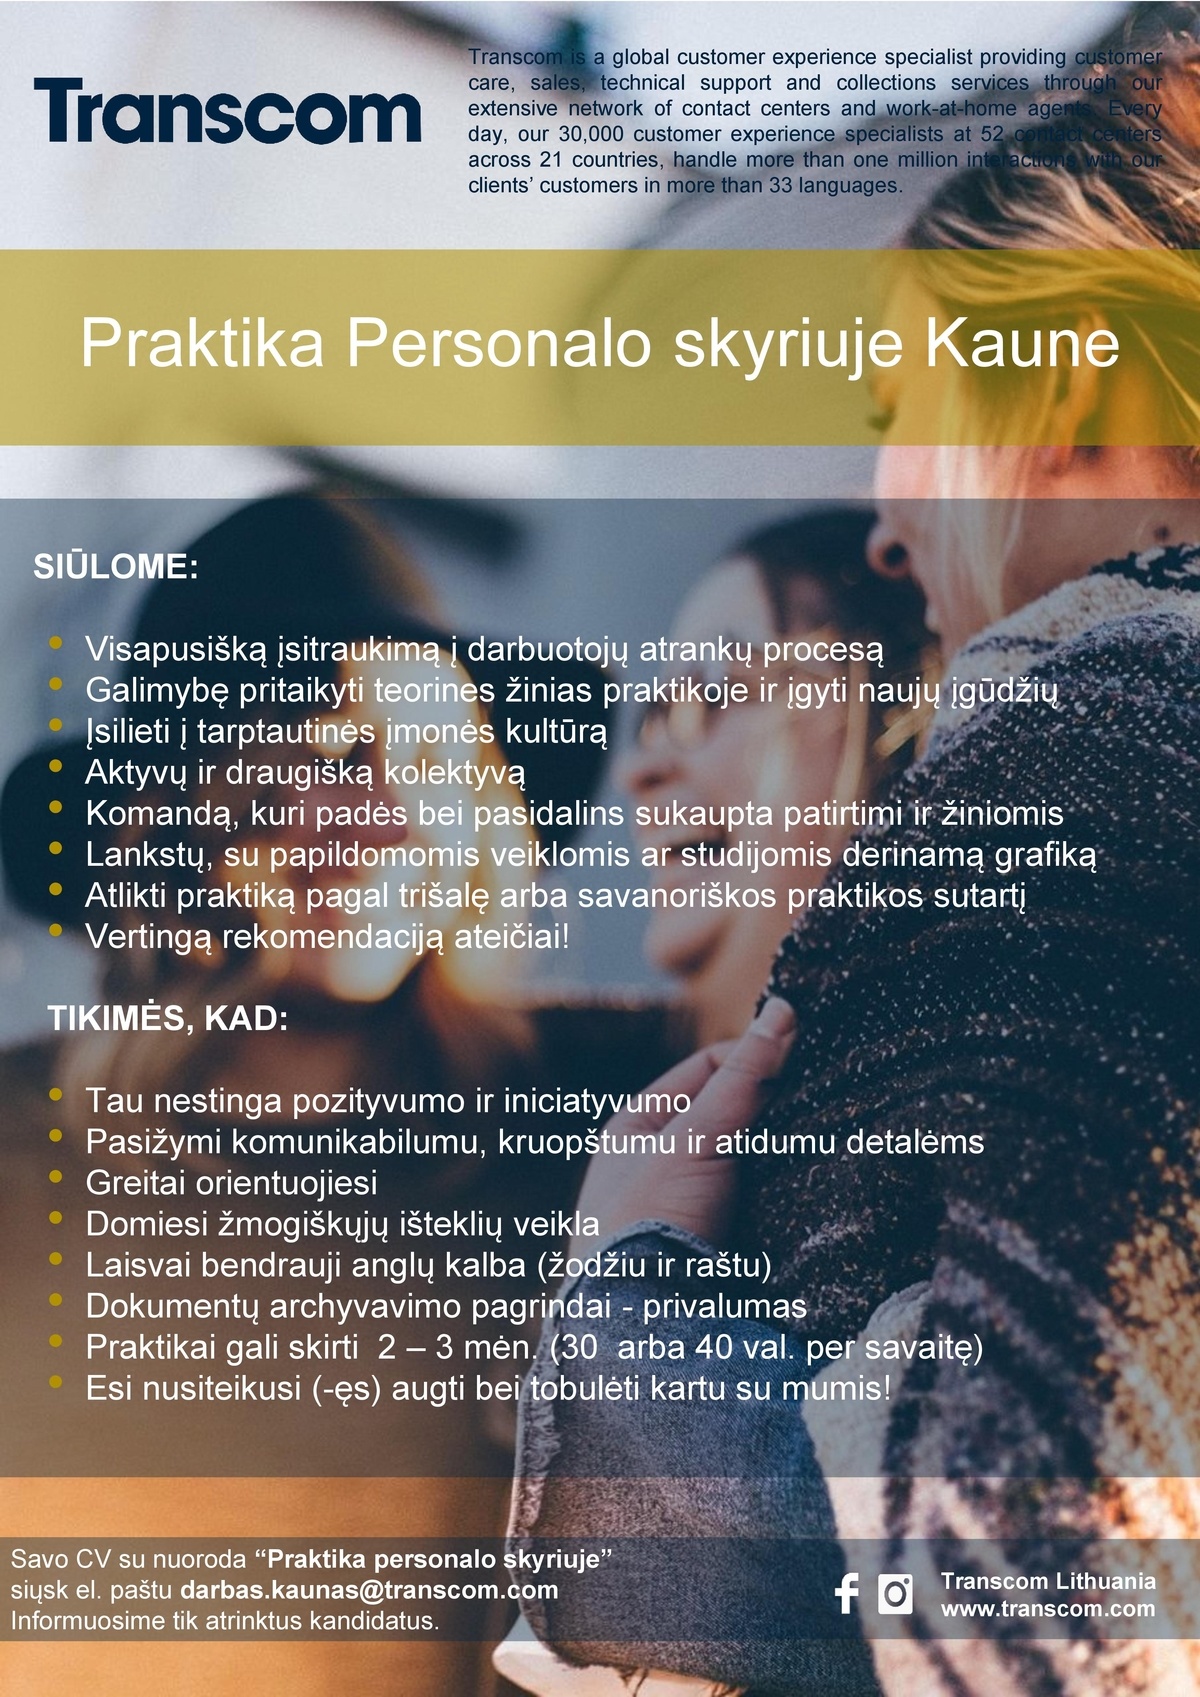 Transcom Worldwide Vilnius, UAB Praktika Personalo skyriuje Kaune!